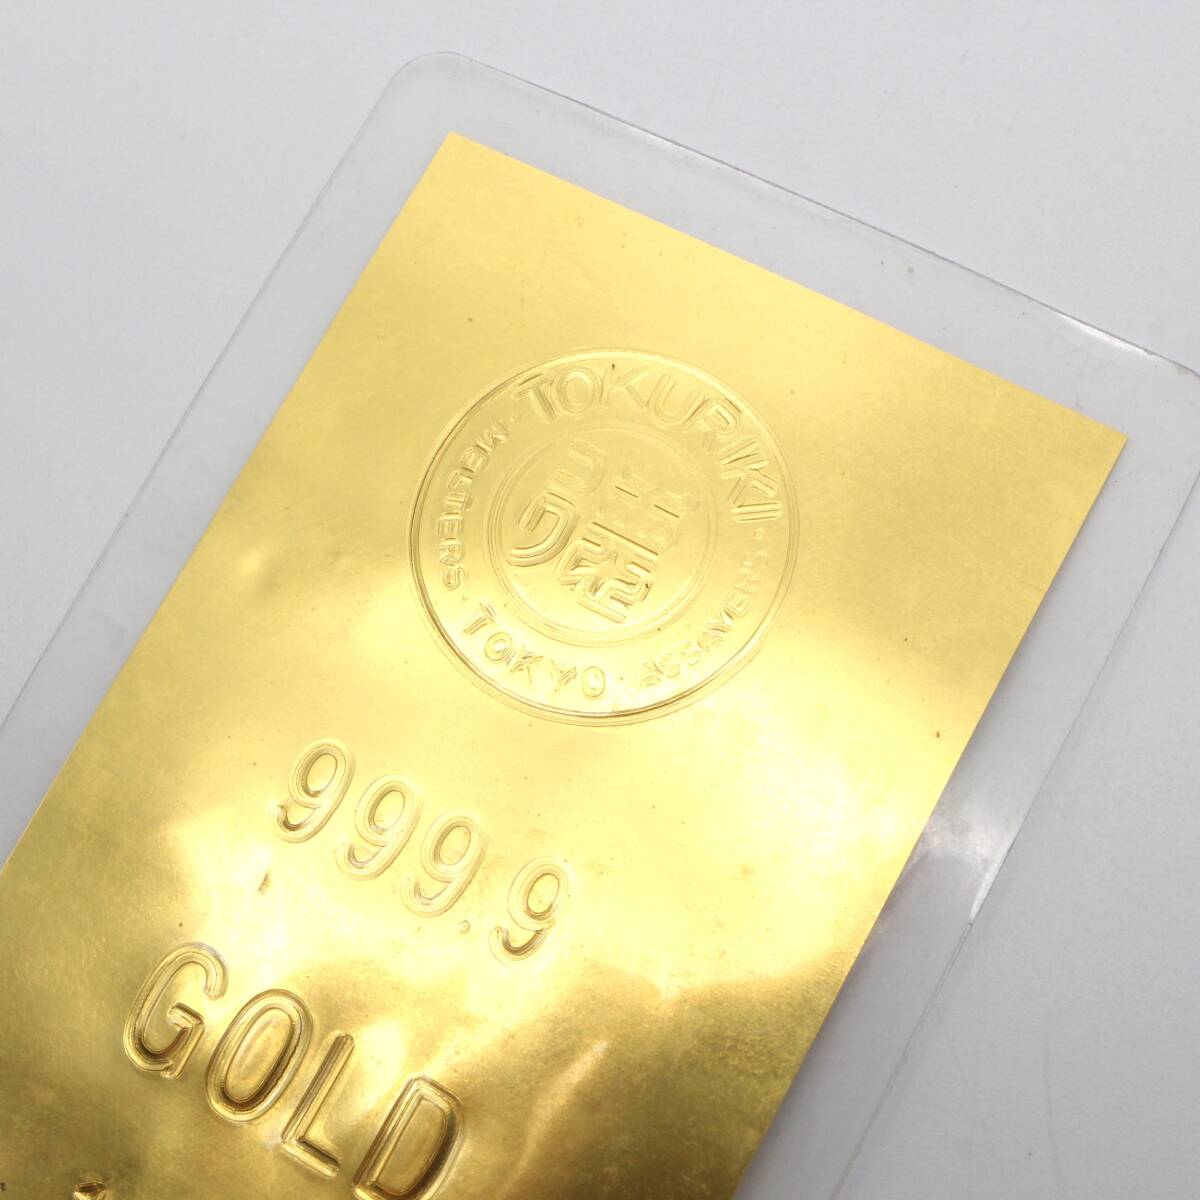 【純金カード】 徳力 TOKURIKI 1g 999.9 ラミネート GOLD ゴールド 24金 K24 総重量2.6g の画像6